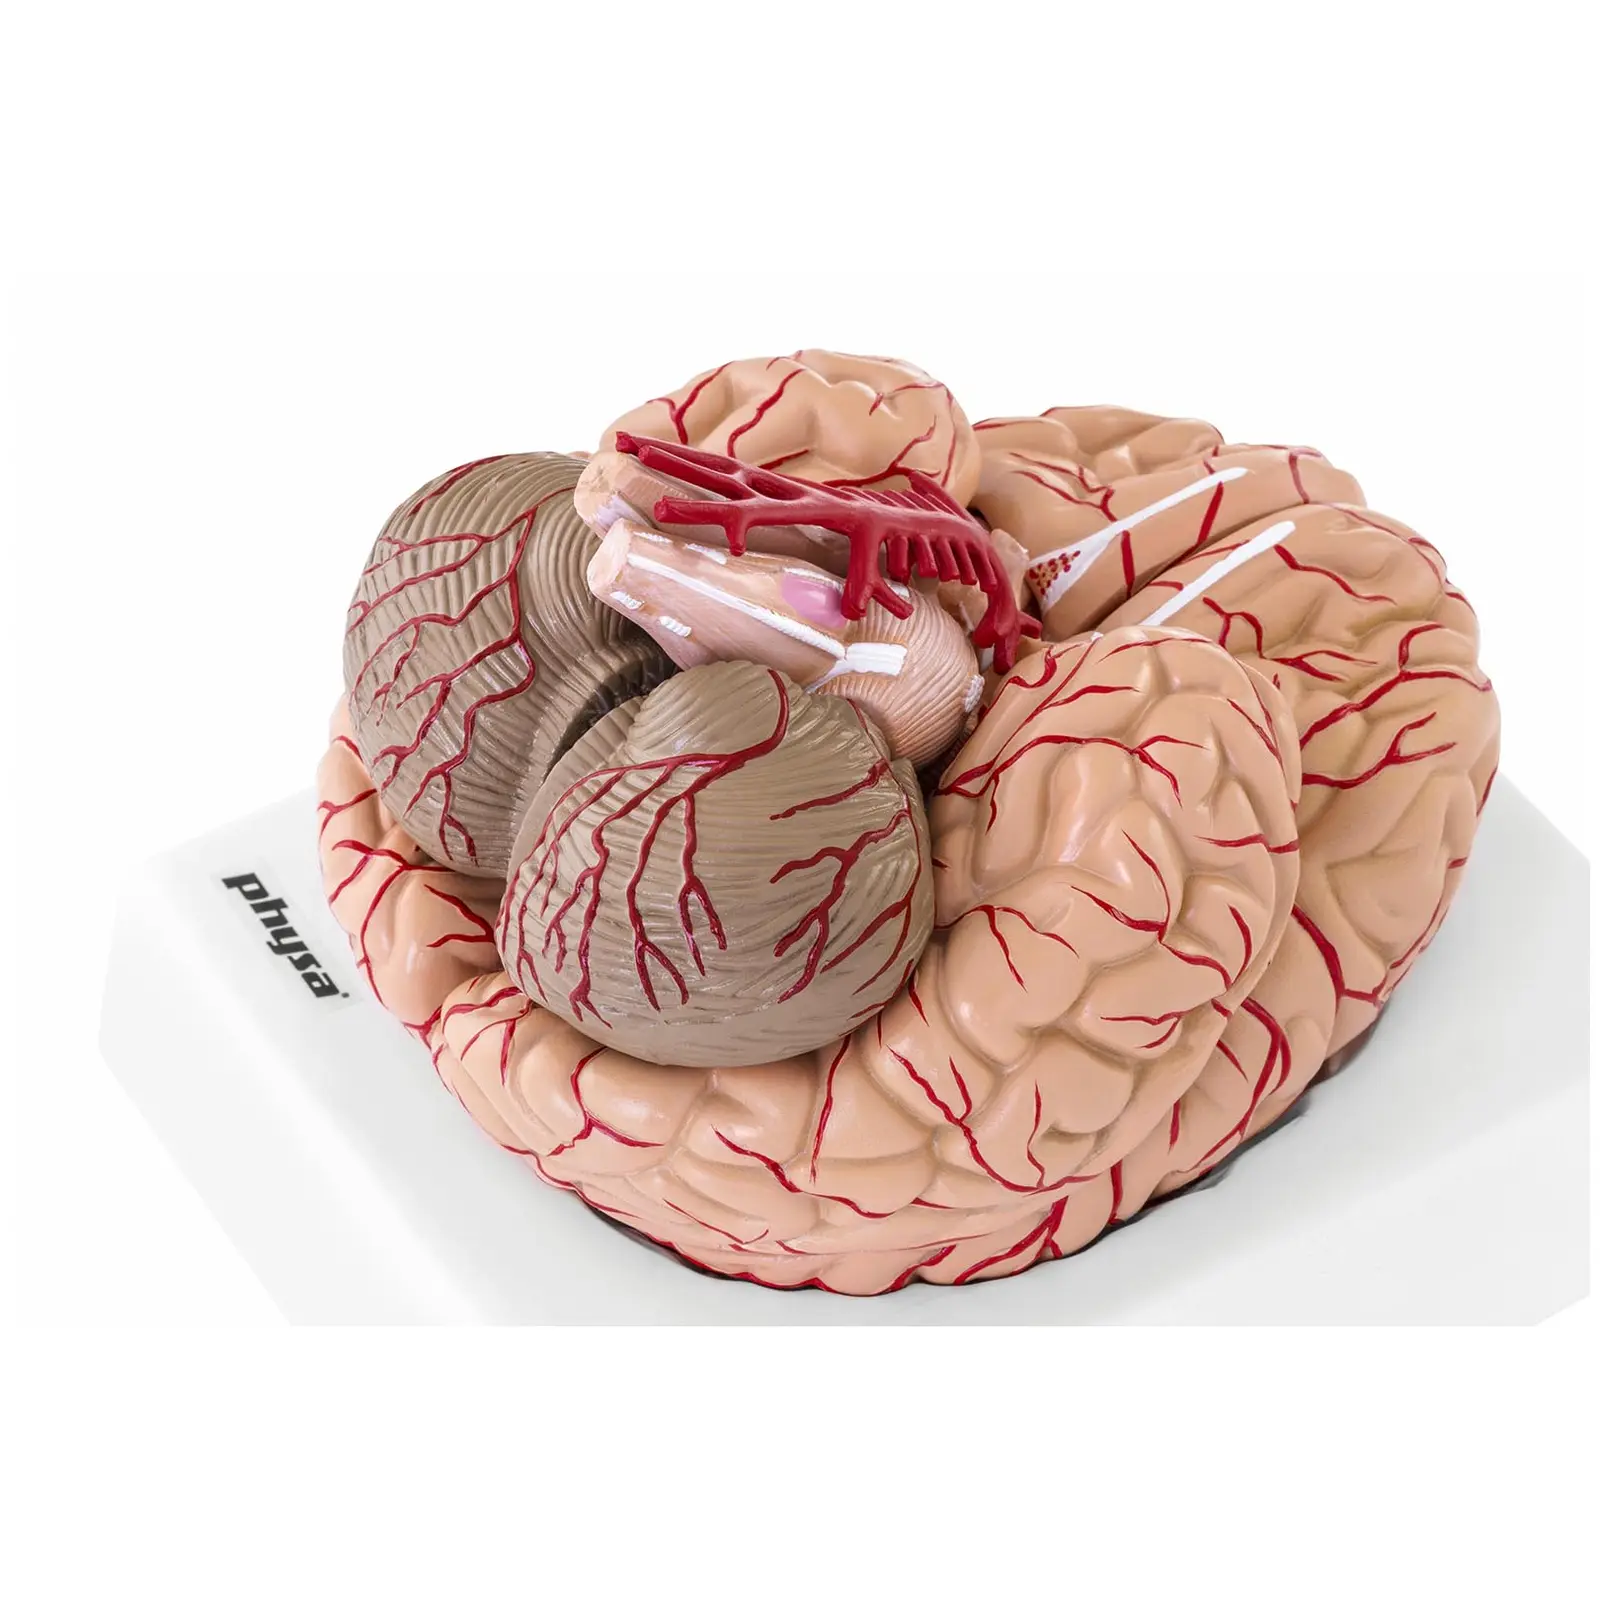 Model mózgu - 9 segmentów - naturalnej wielkości